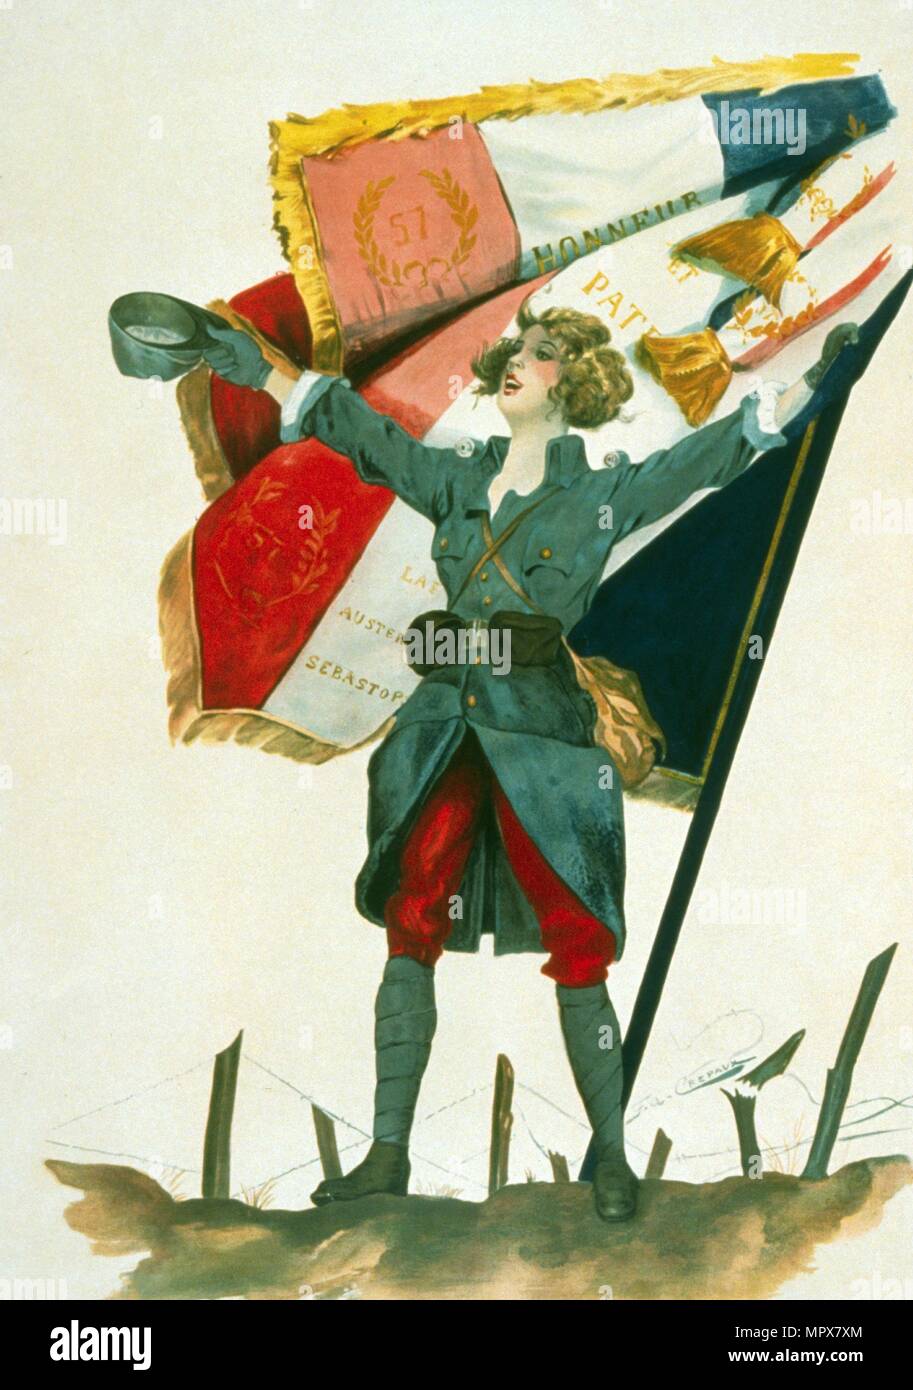 Vive la France, pub. 1918 (colour lithograph) Stock Photo